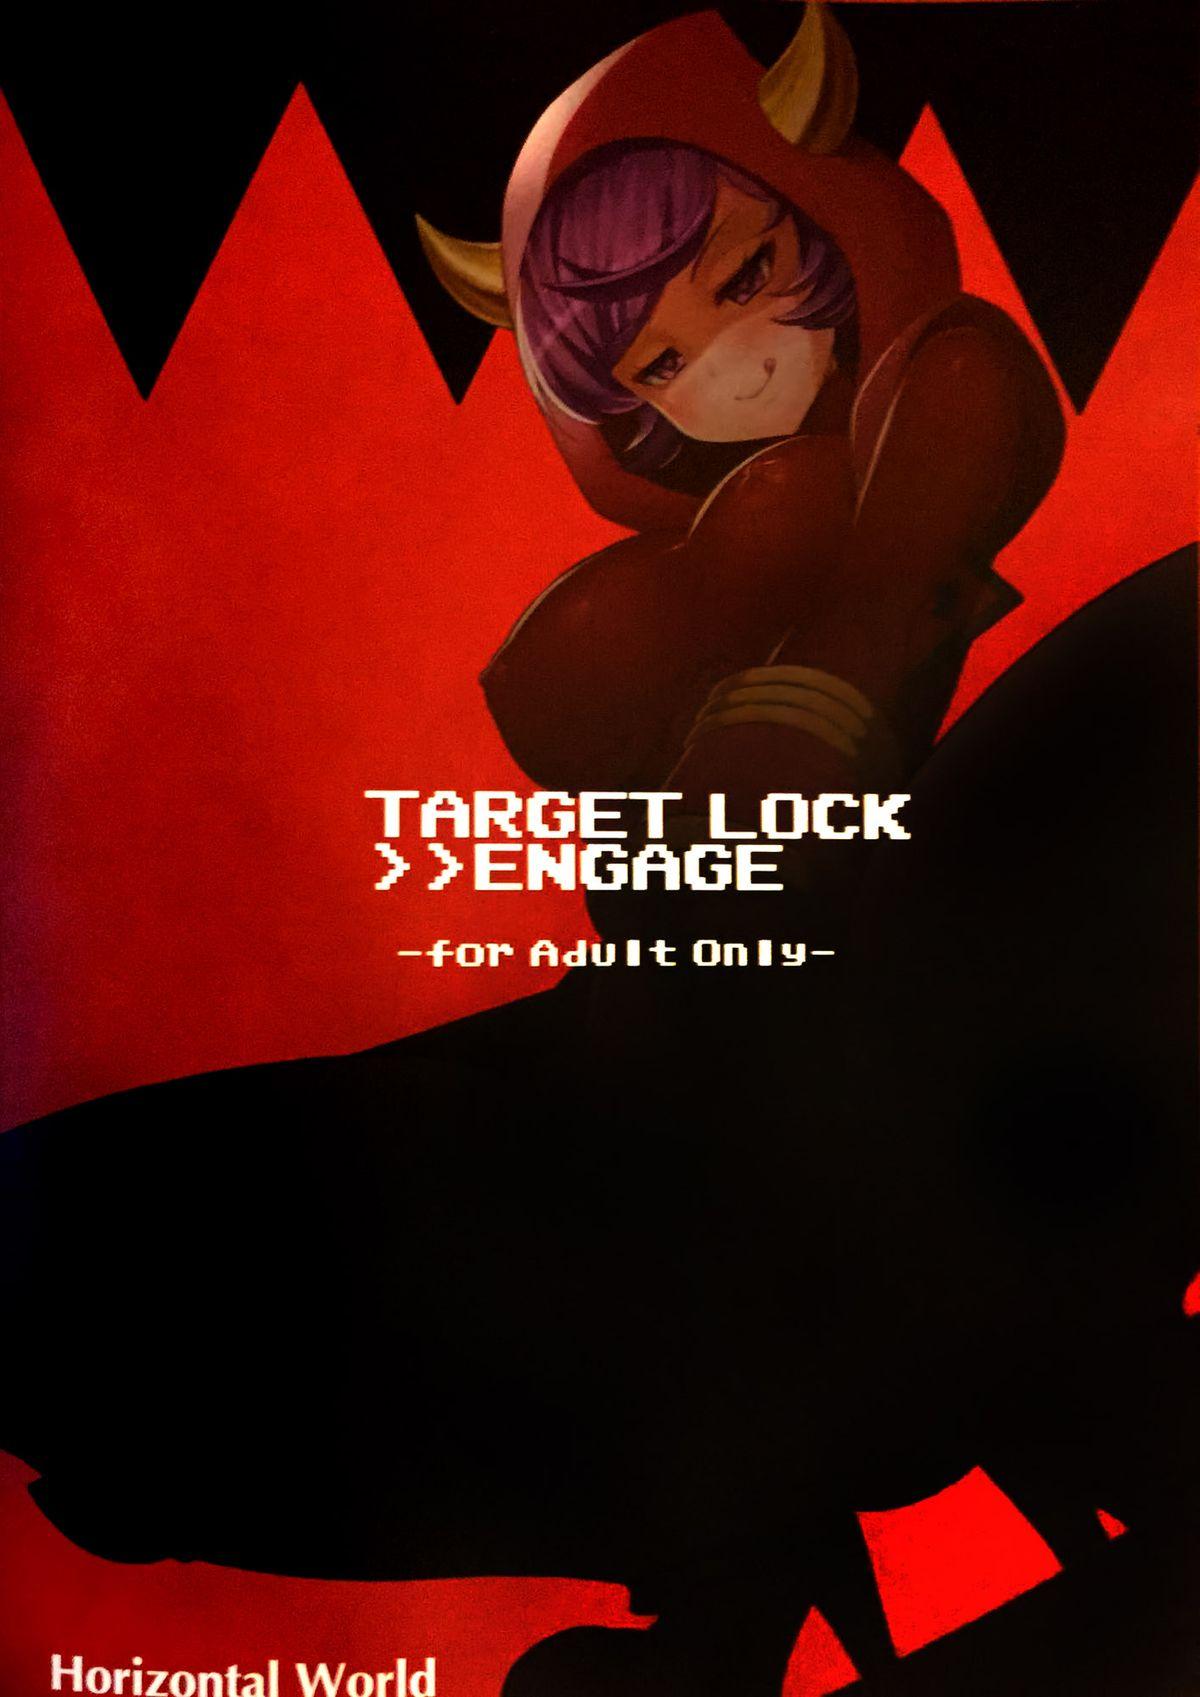 Target Lock ＞＞ Engage 17